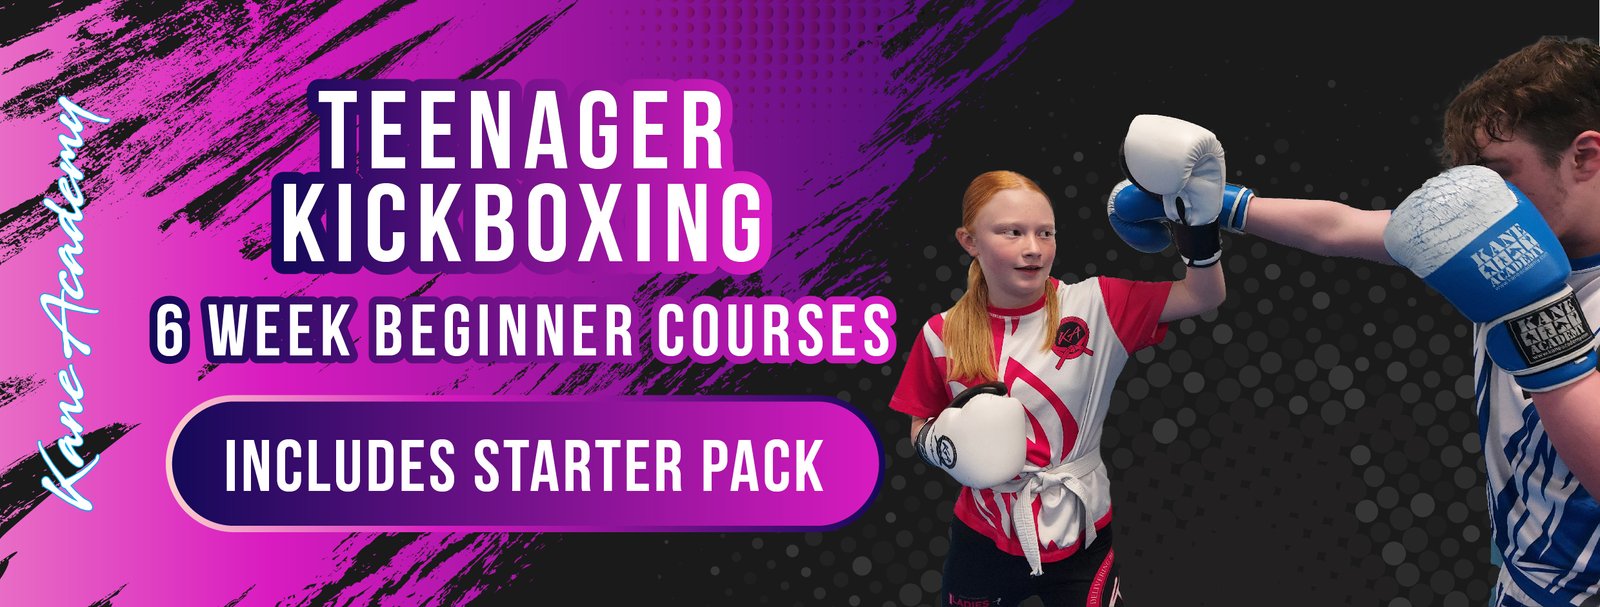 Teenager 6 week beginner kickboxing course